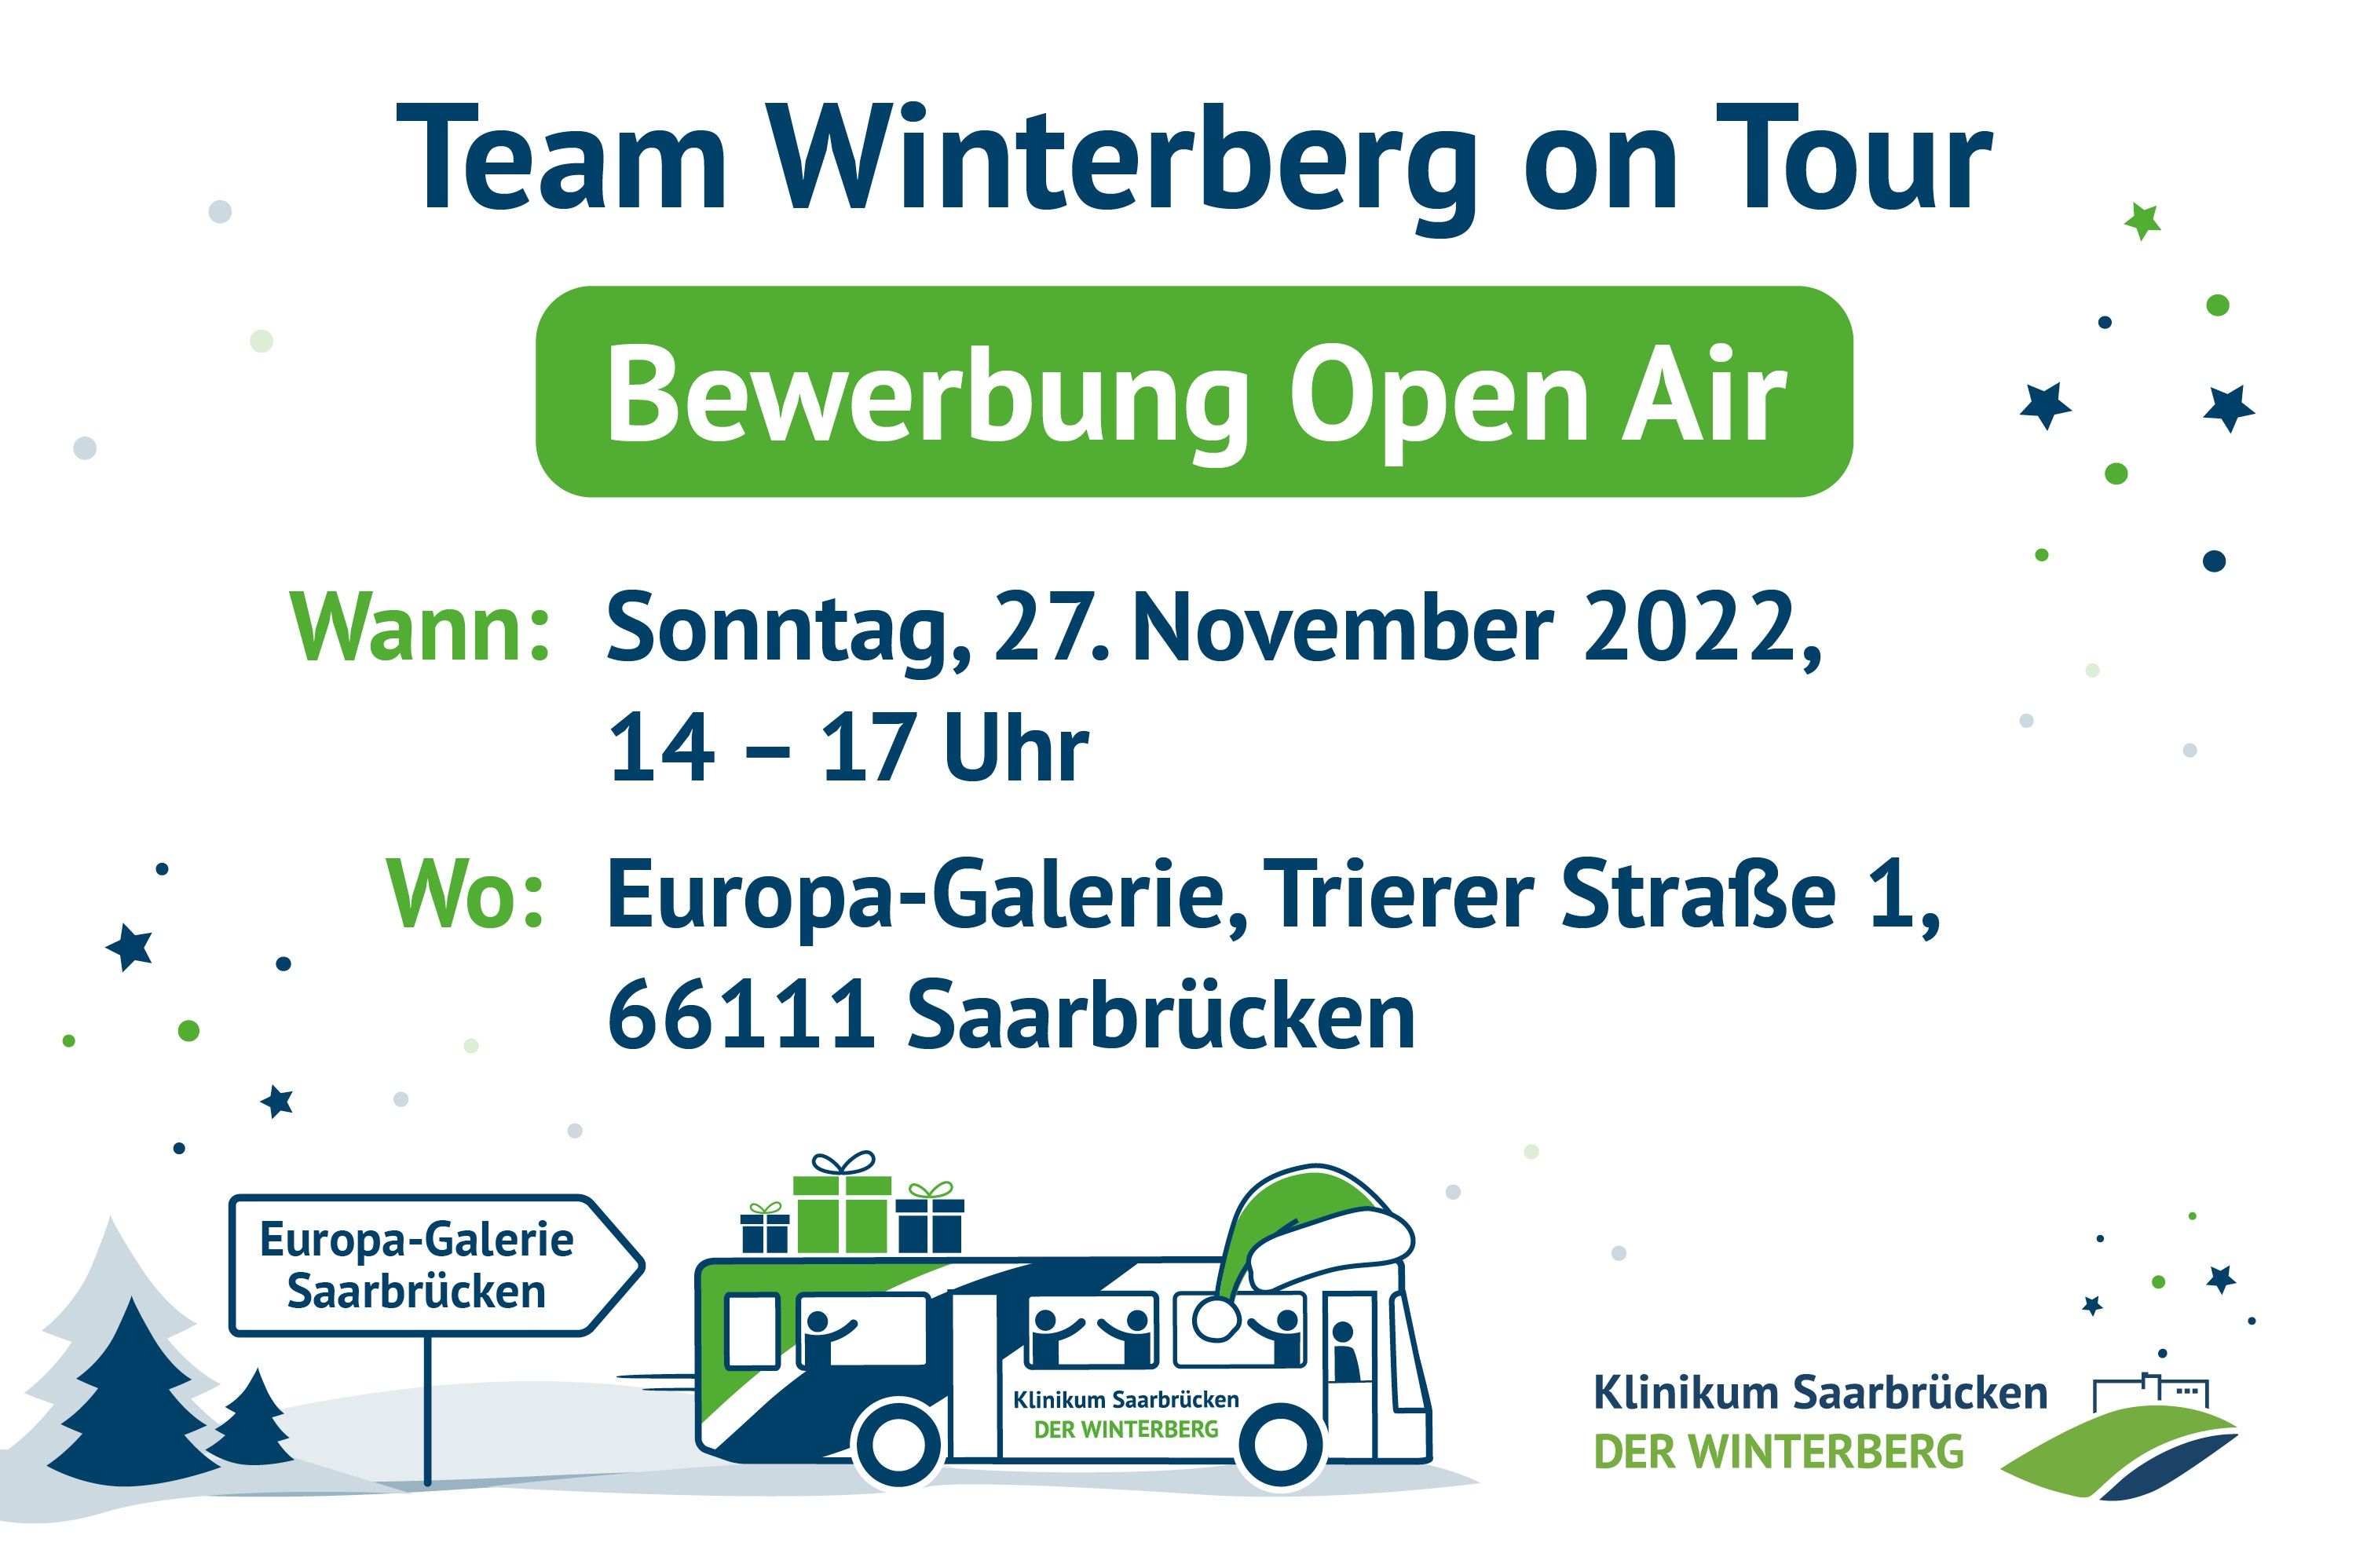 Symbolbild: Team Winterberg on Tour mit einem Bewerbung Open Air am Sonntag, 27. November 2022, zwischen 14-17 Uhr vor der Europa-Galerie in Saarbrücken. 